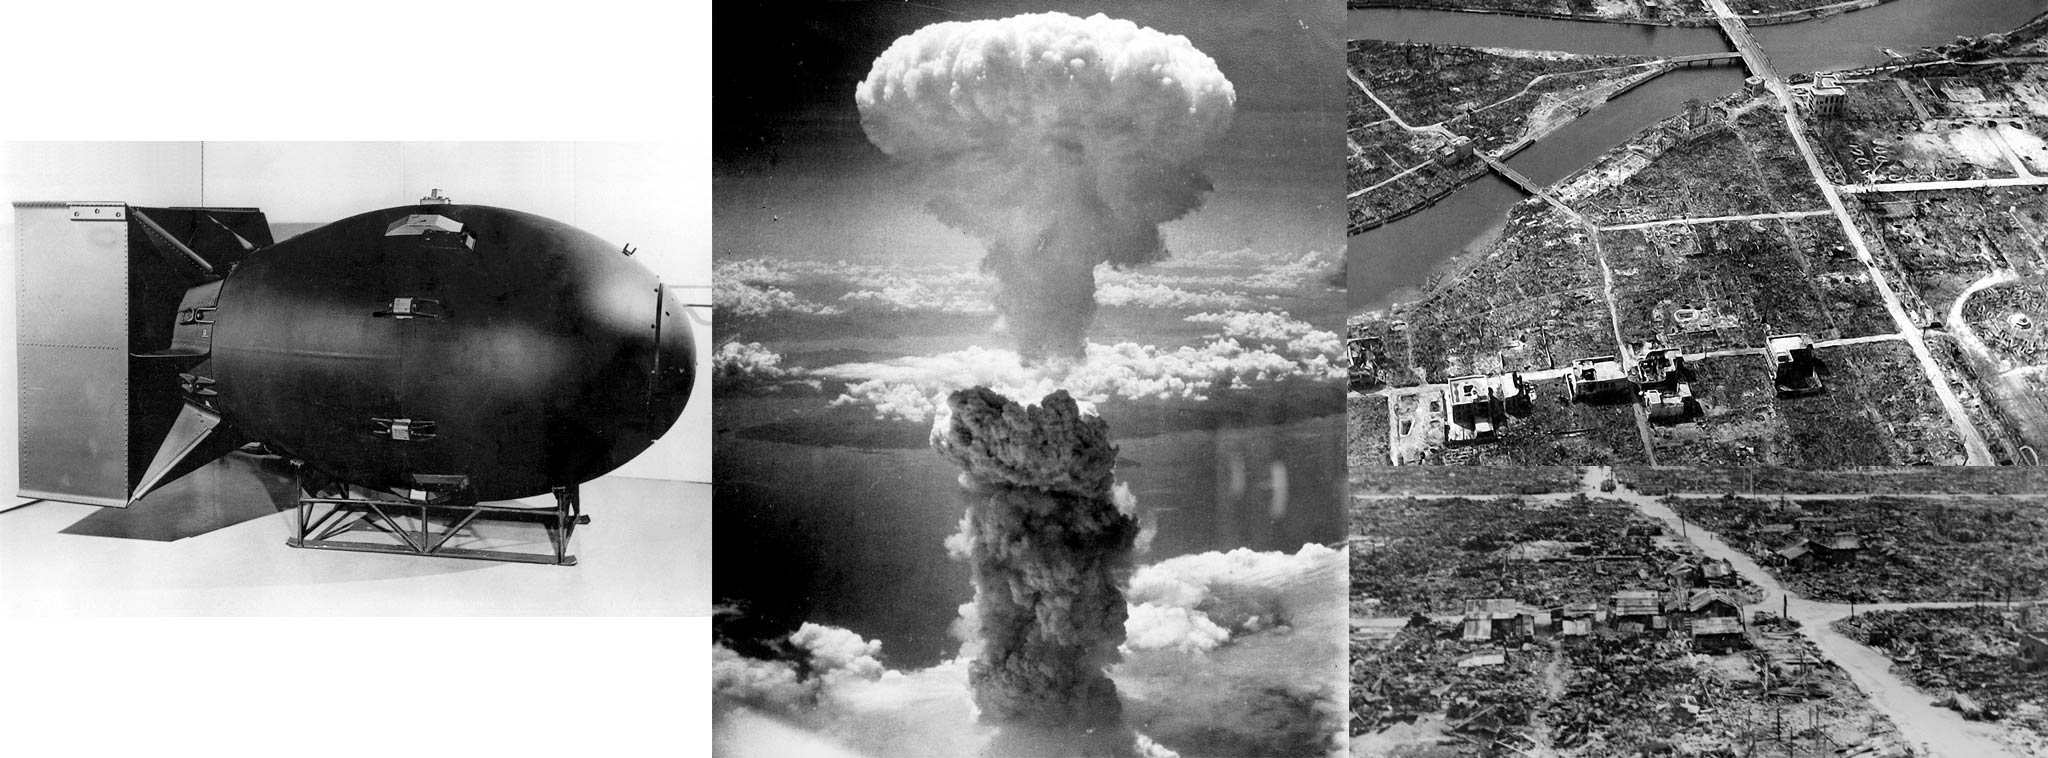 Câu chuyện đằng sau bức ảnh đám mây hình nấm từ vụ nổ bom nguyên tử trên bầu trời Nagasaki